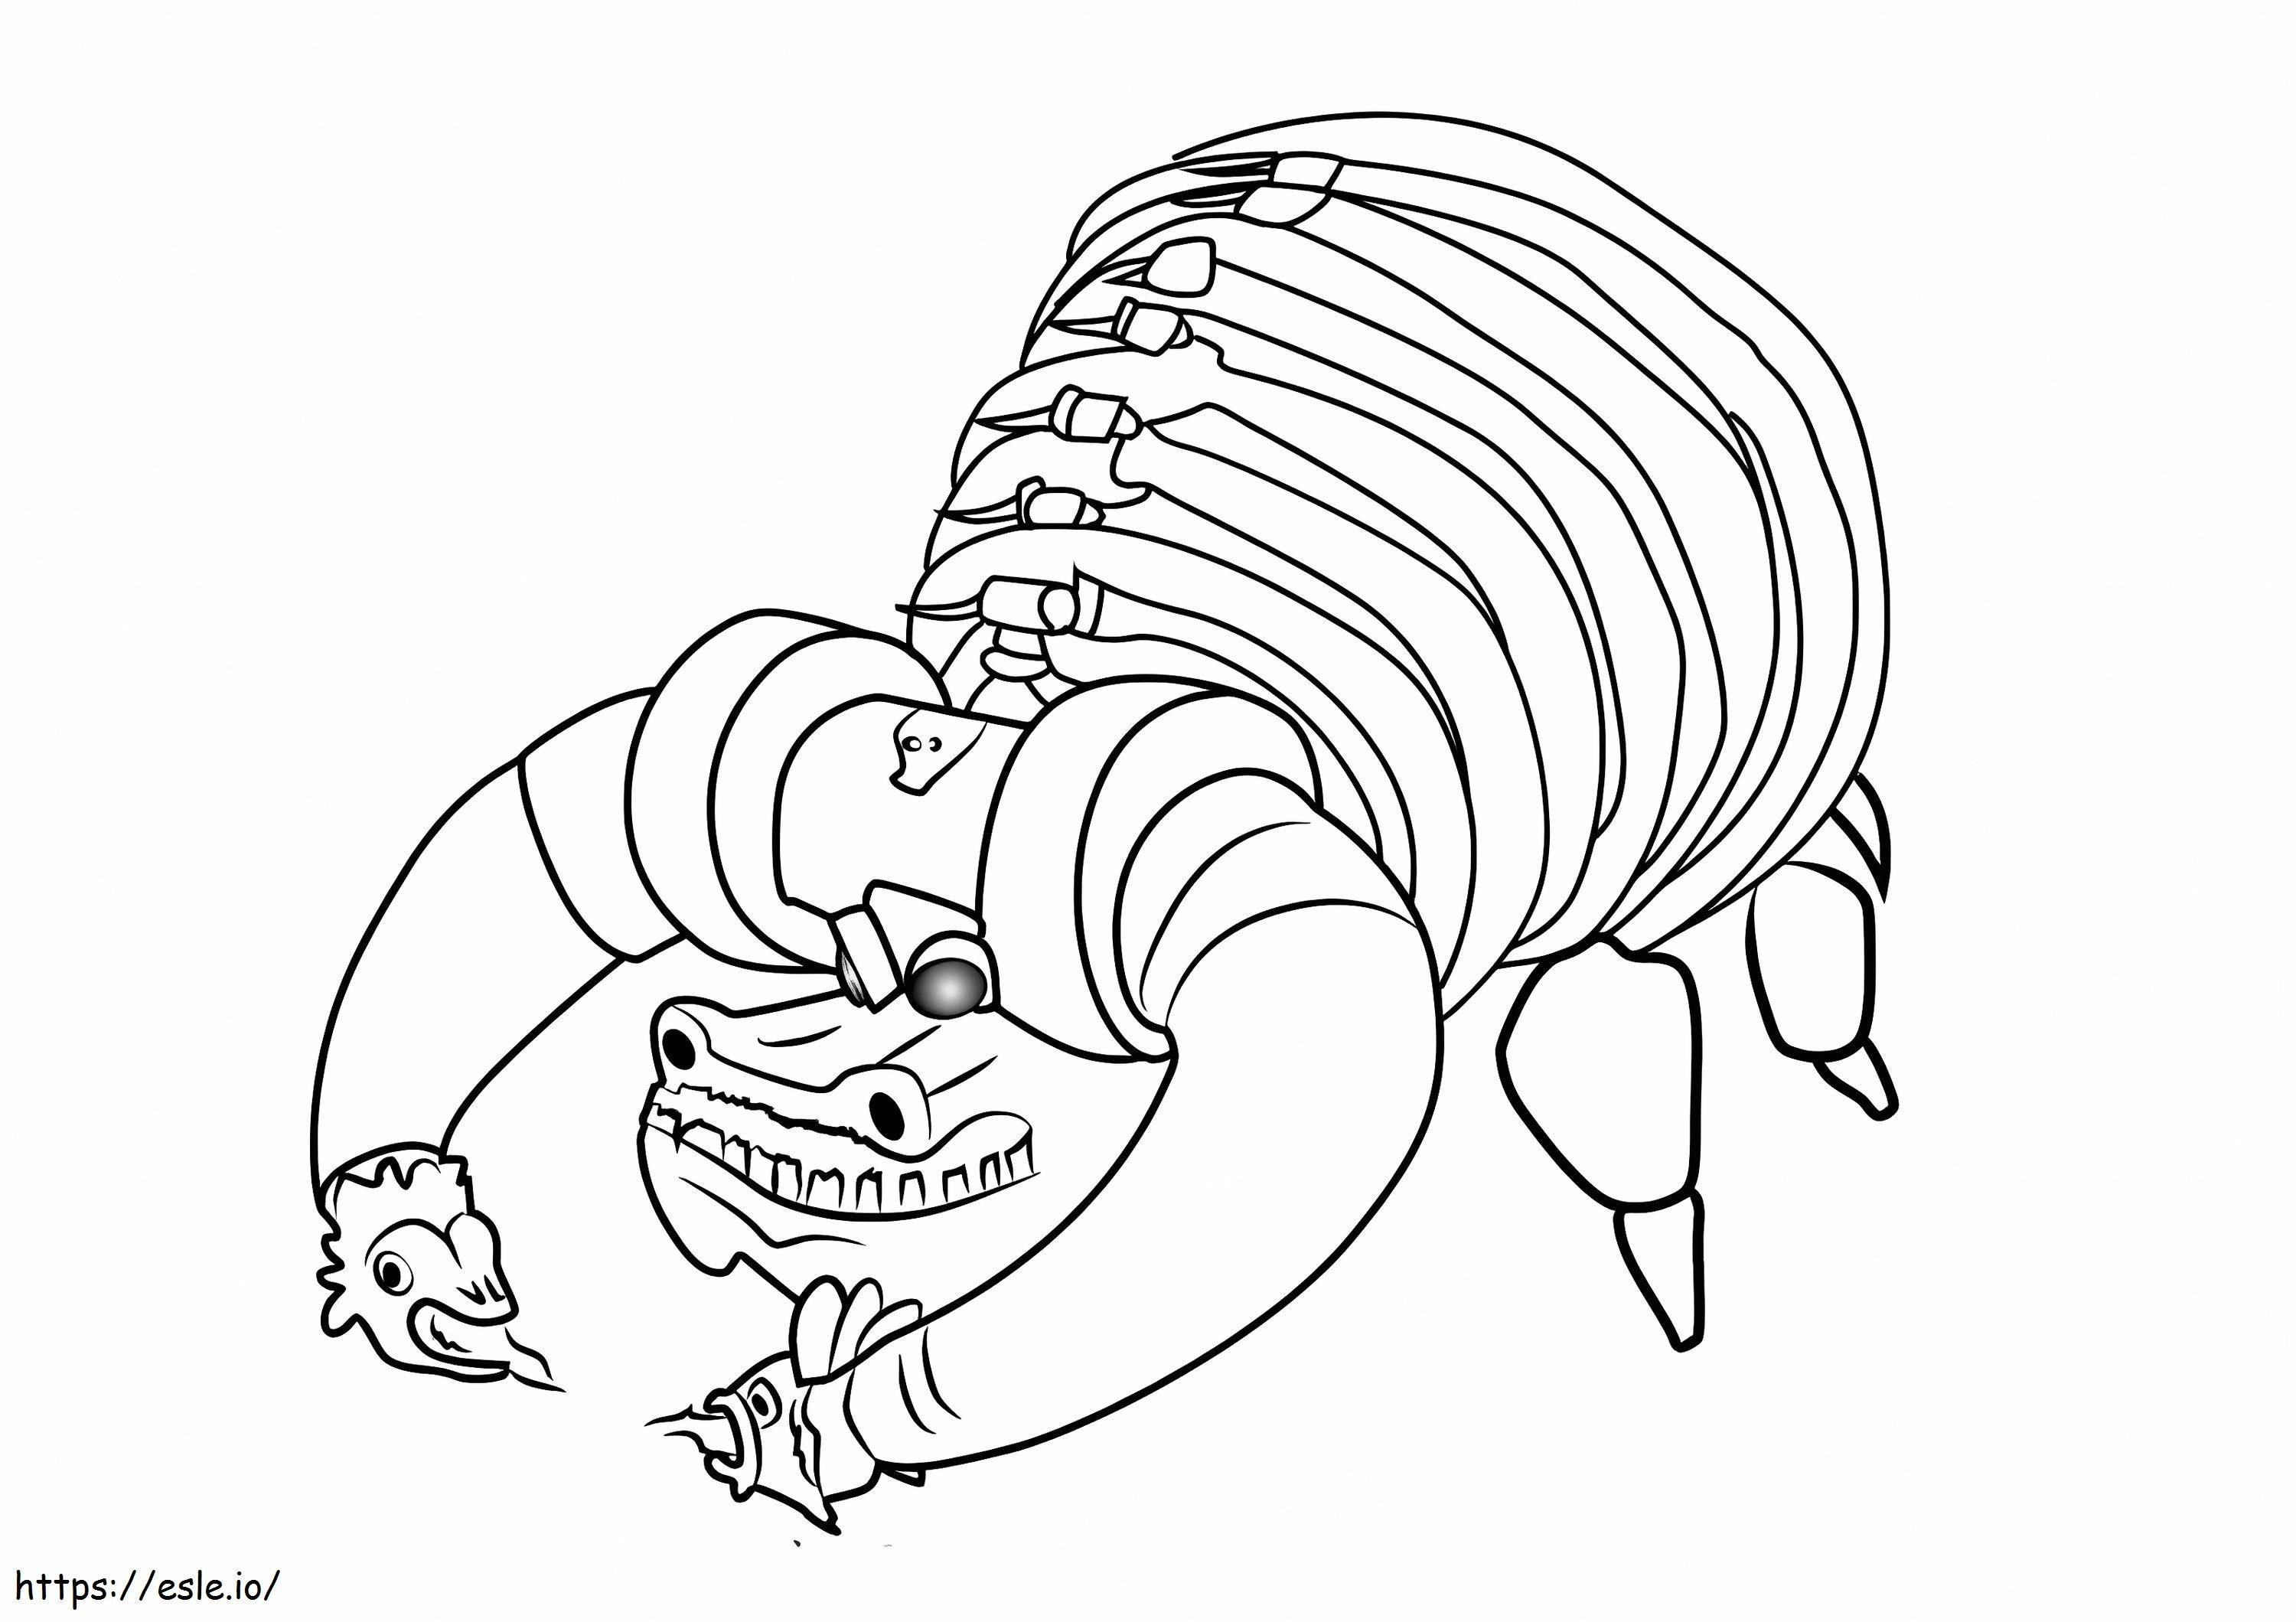 Taur cu craniu din cartea vieții de colorat